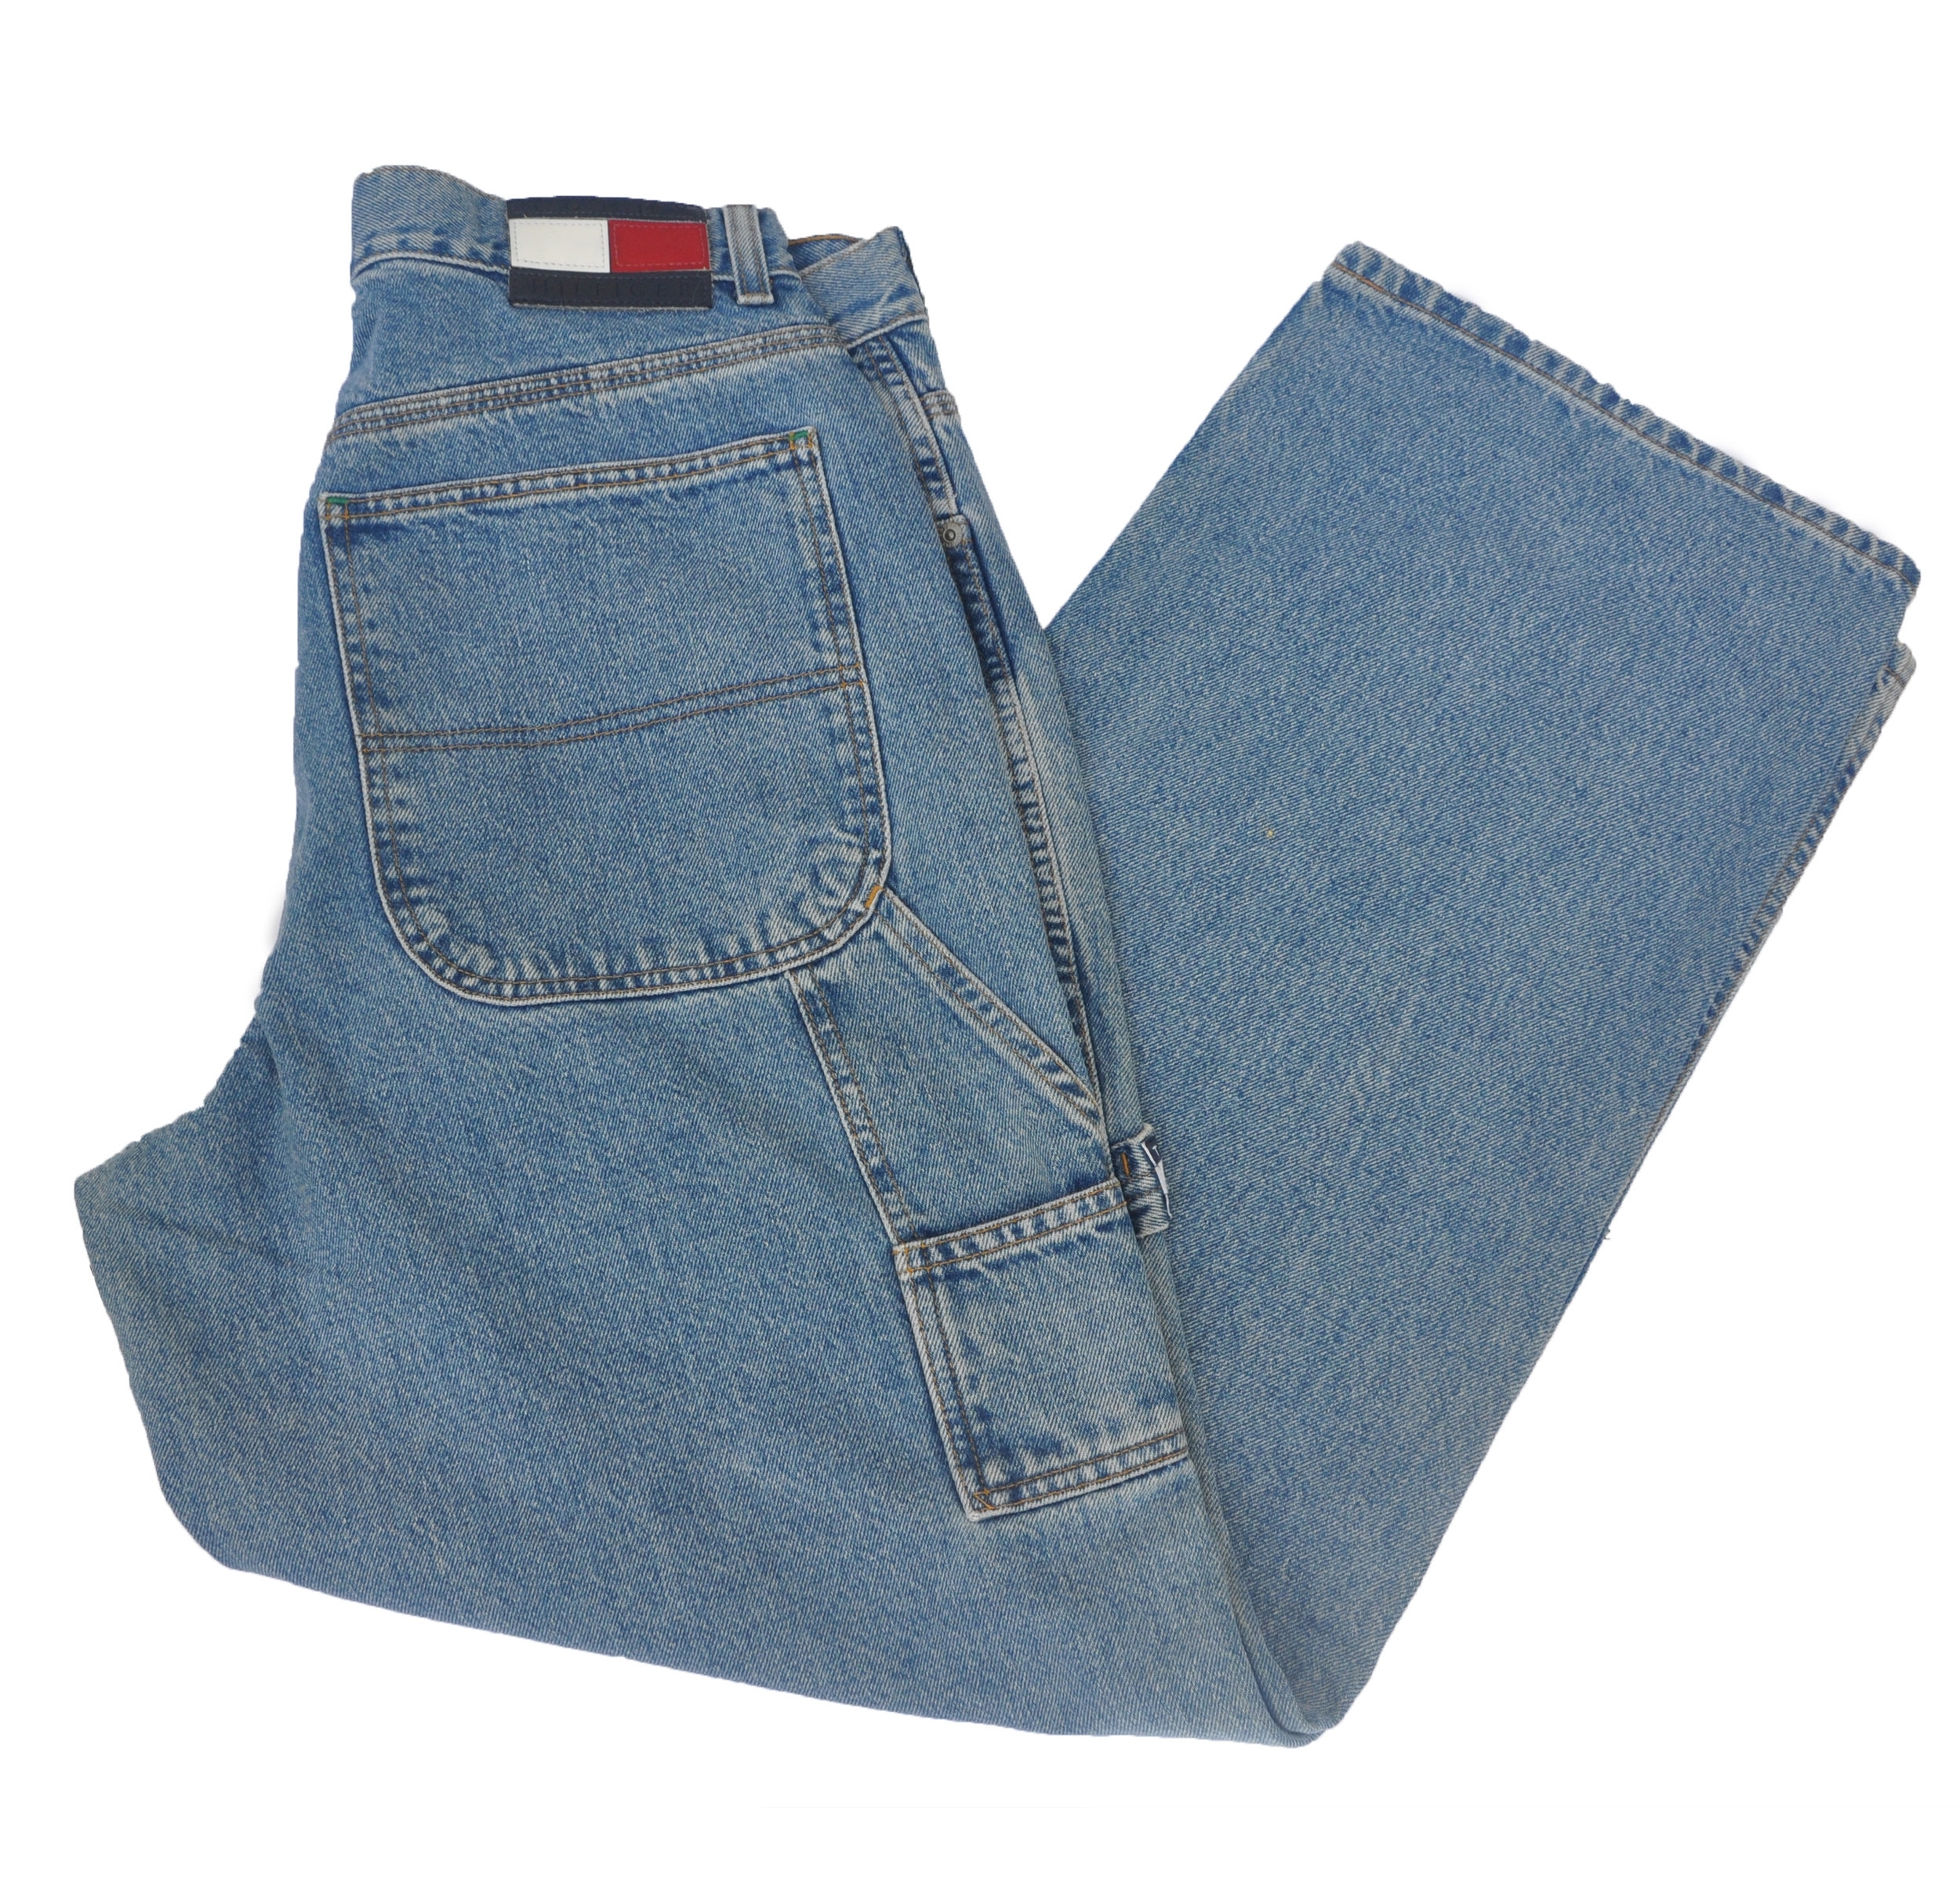 hilfiger carpenter jeans